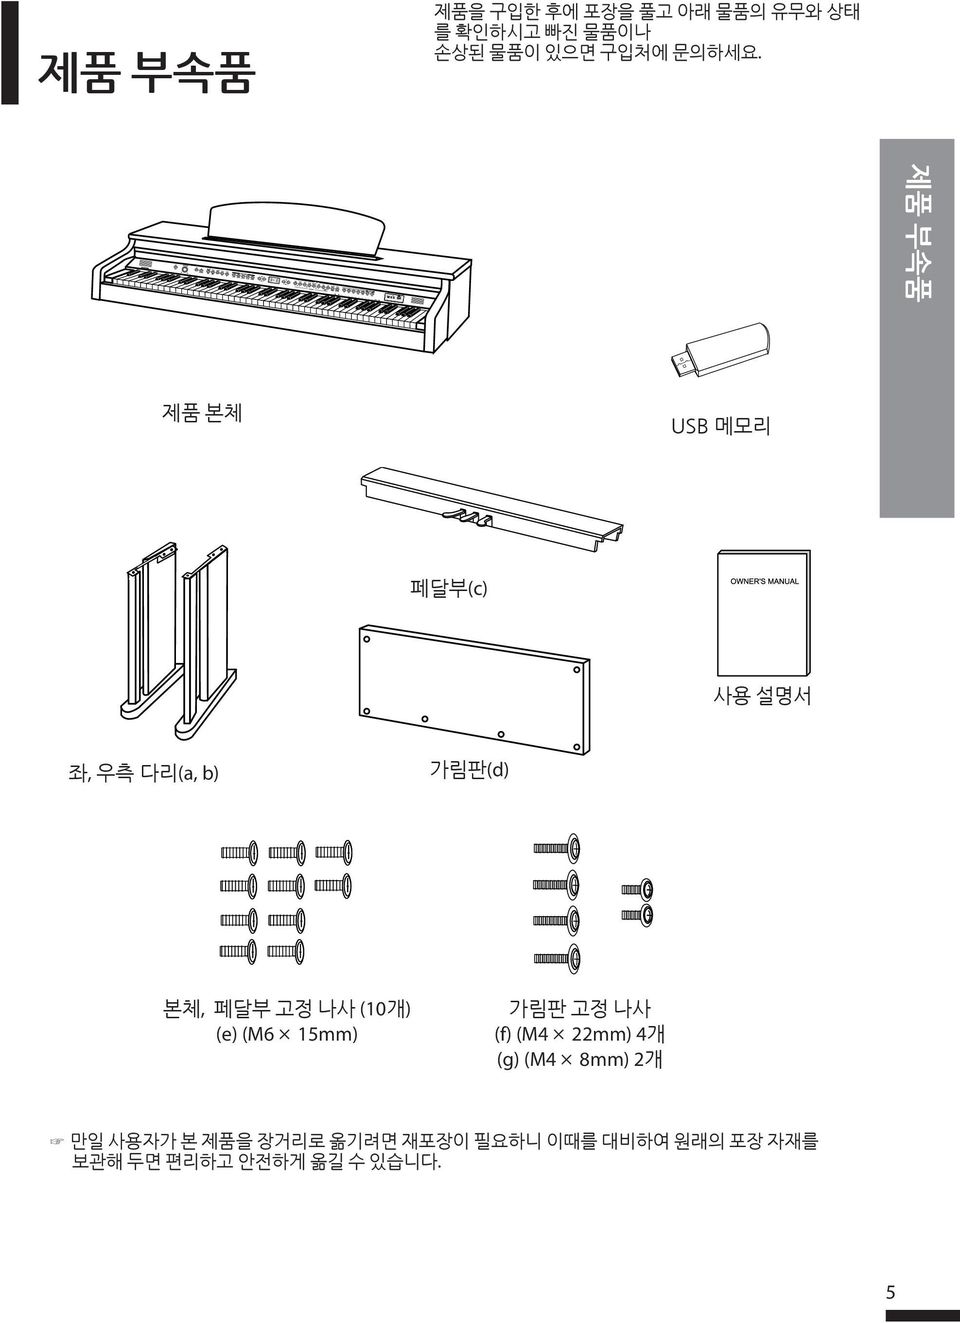 제품 부속품 제품 본체 USB 메모리 페달부(c) 사용 설명서 좌, 우측 다리(a, b) 가림판(d) 본체, 페달부 고정 나사